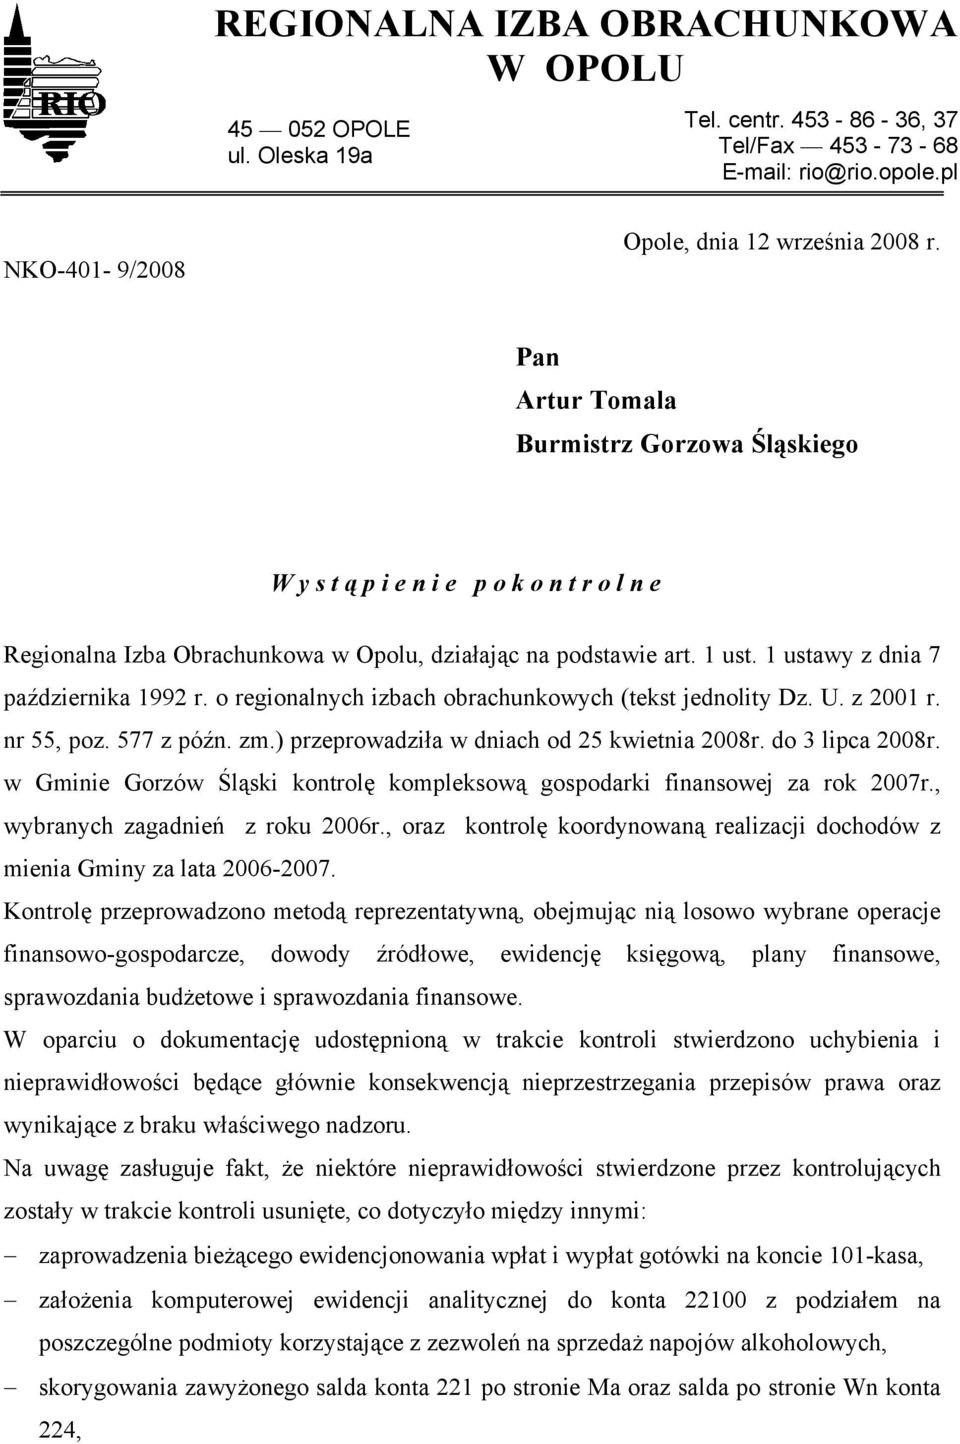 o regionalnych izbach obrachunkowych (tekst jednolity Dz. U. z 2001 r. nr 55, poz. 577 z późn. zm.) przeprowadziła w dniach od 25 kwietnia 2008r. do 3 lipca 2008r.